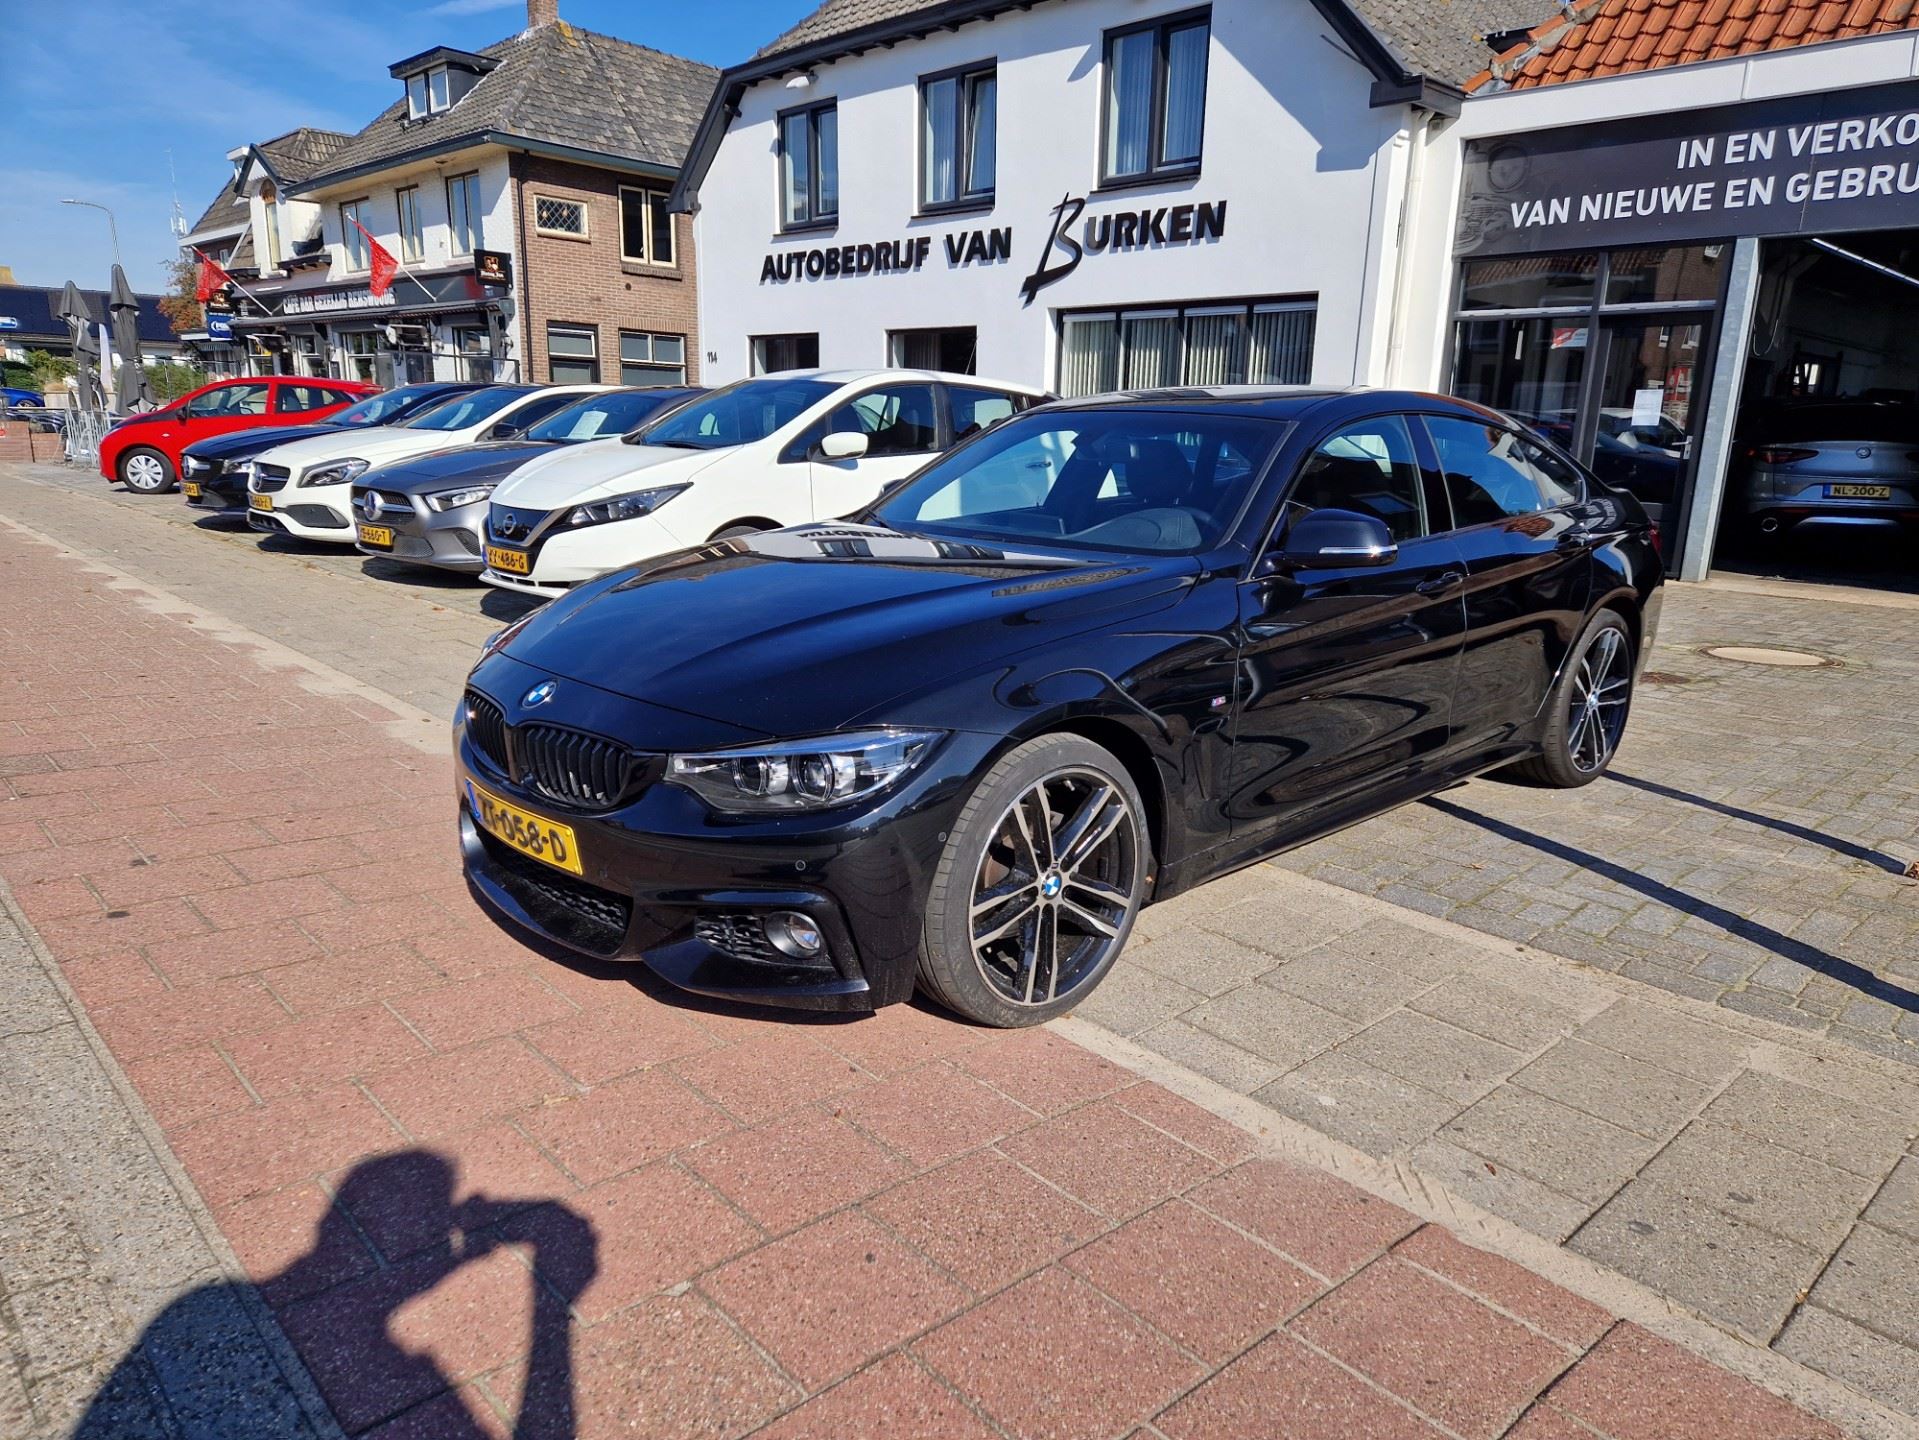 BMW 4-serie Gran Coupé occasion - Autobedrijf van Burken